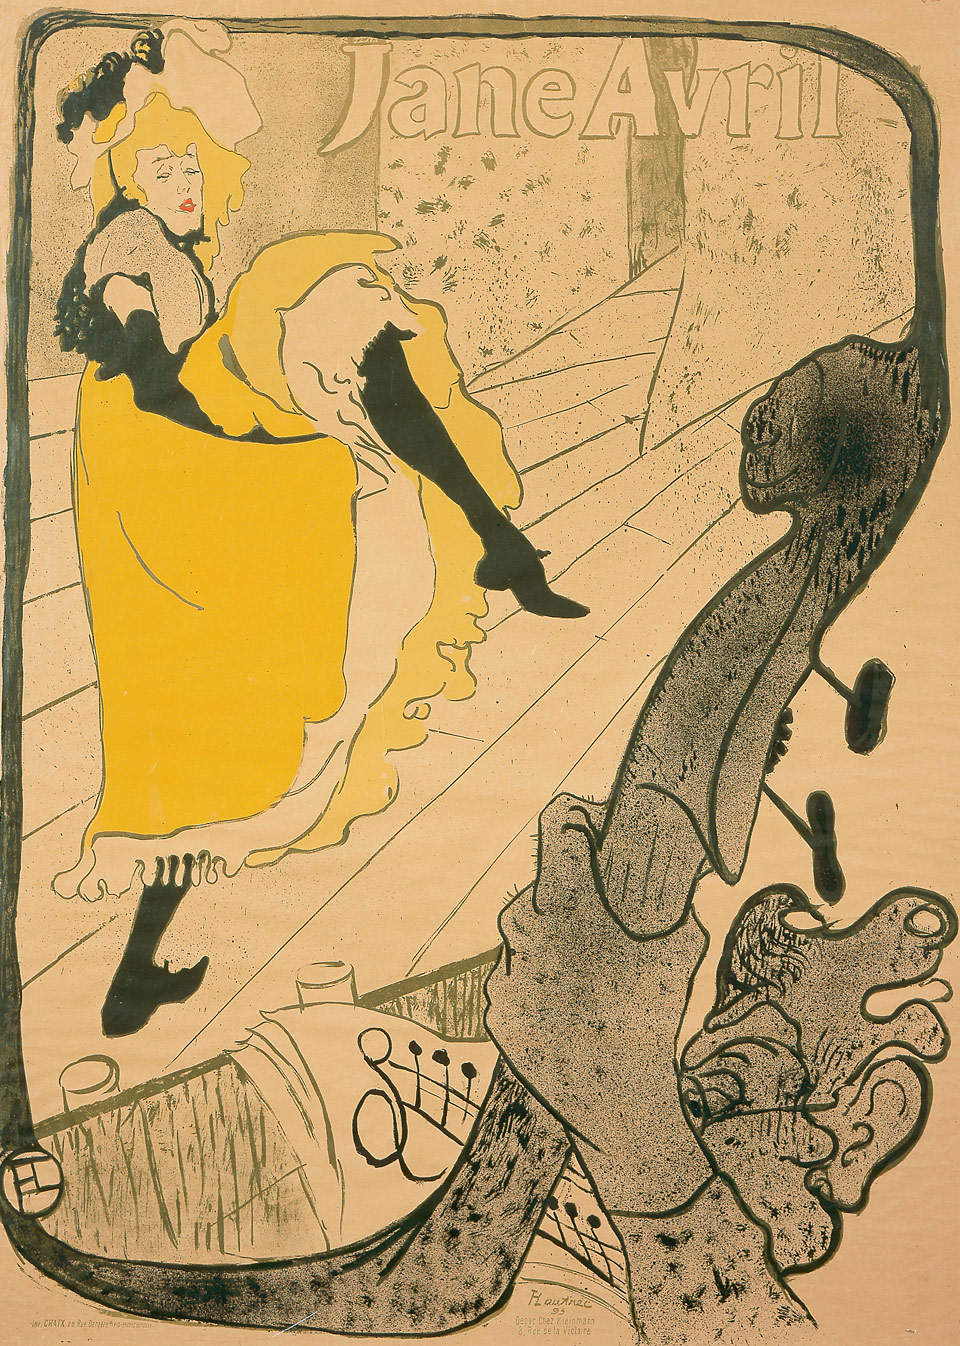 Henri de Toulouse-Lautrec: Jane Avril, Jardin de Paris, 1893